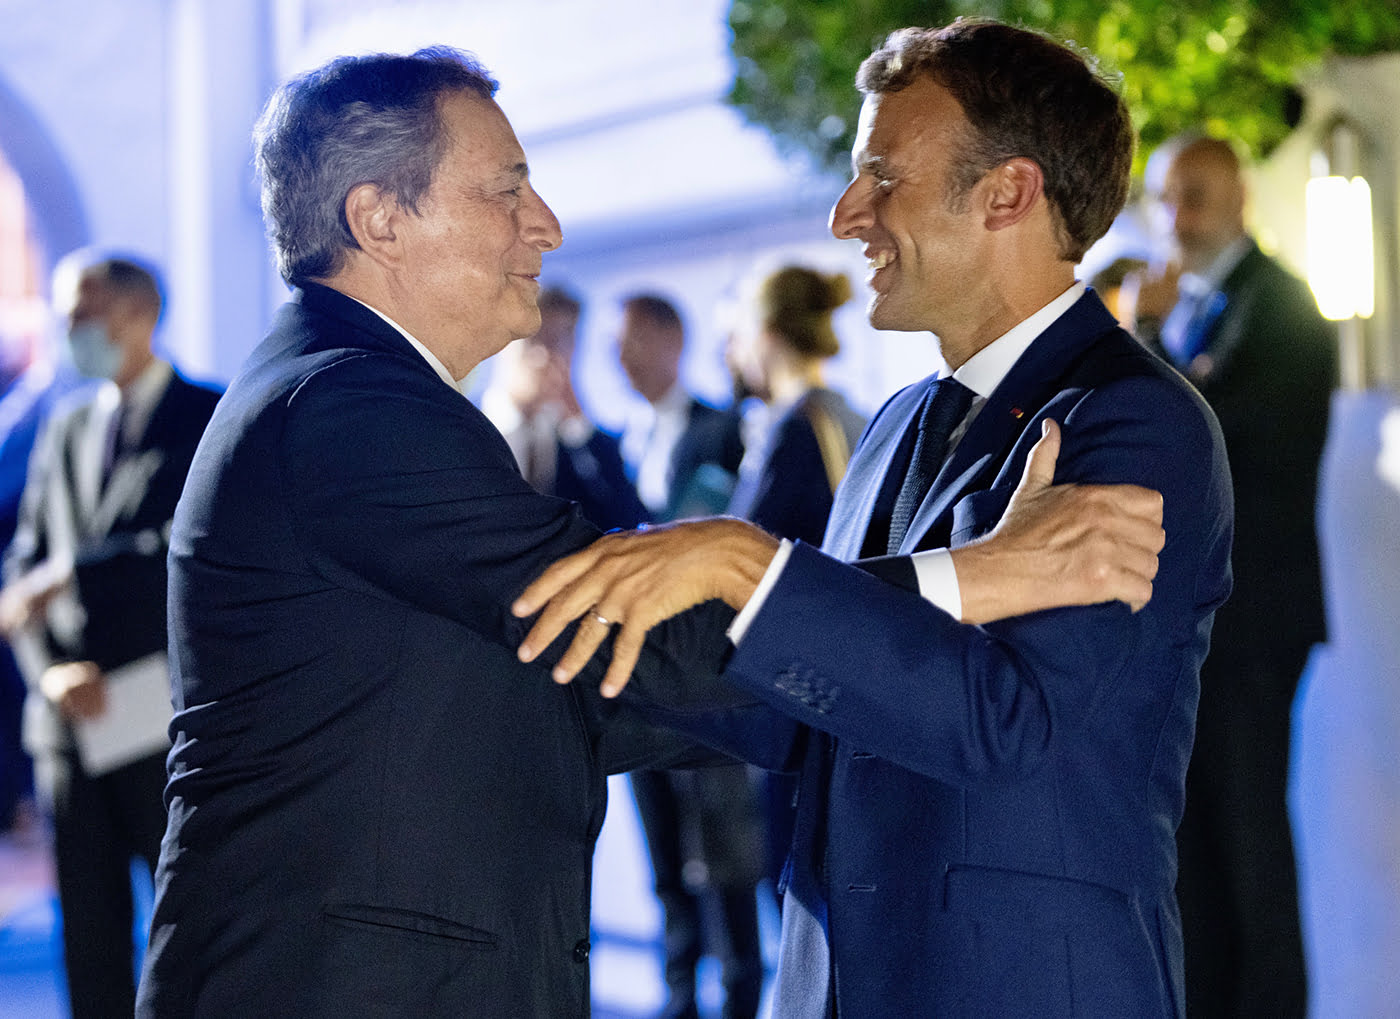 Accordo del Quirinale: l’accordo bilaterale franco-italiano realizzerà le sue ambizioni e sfide?